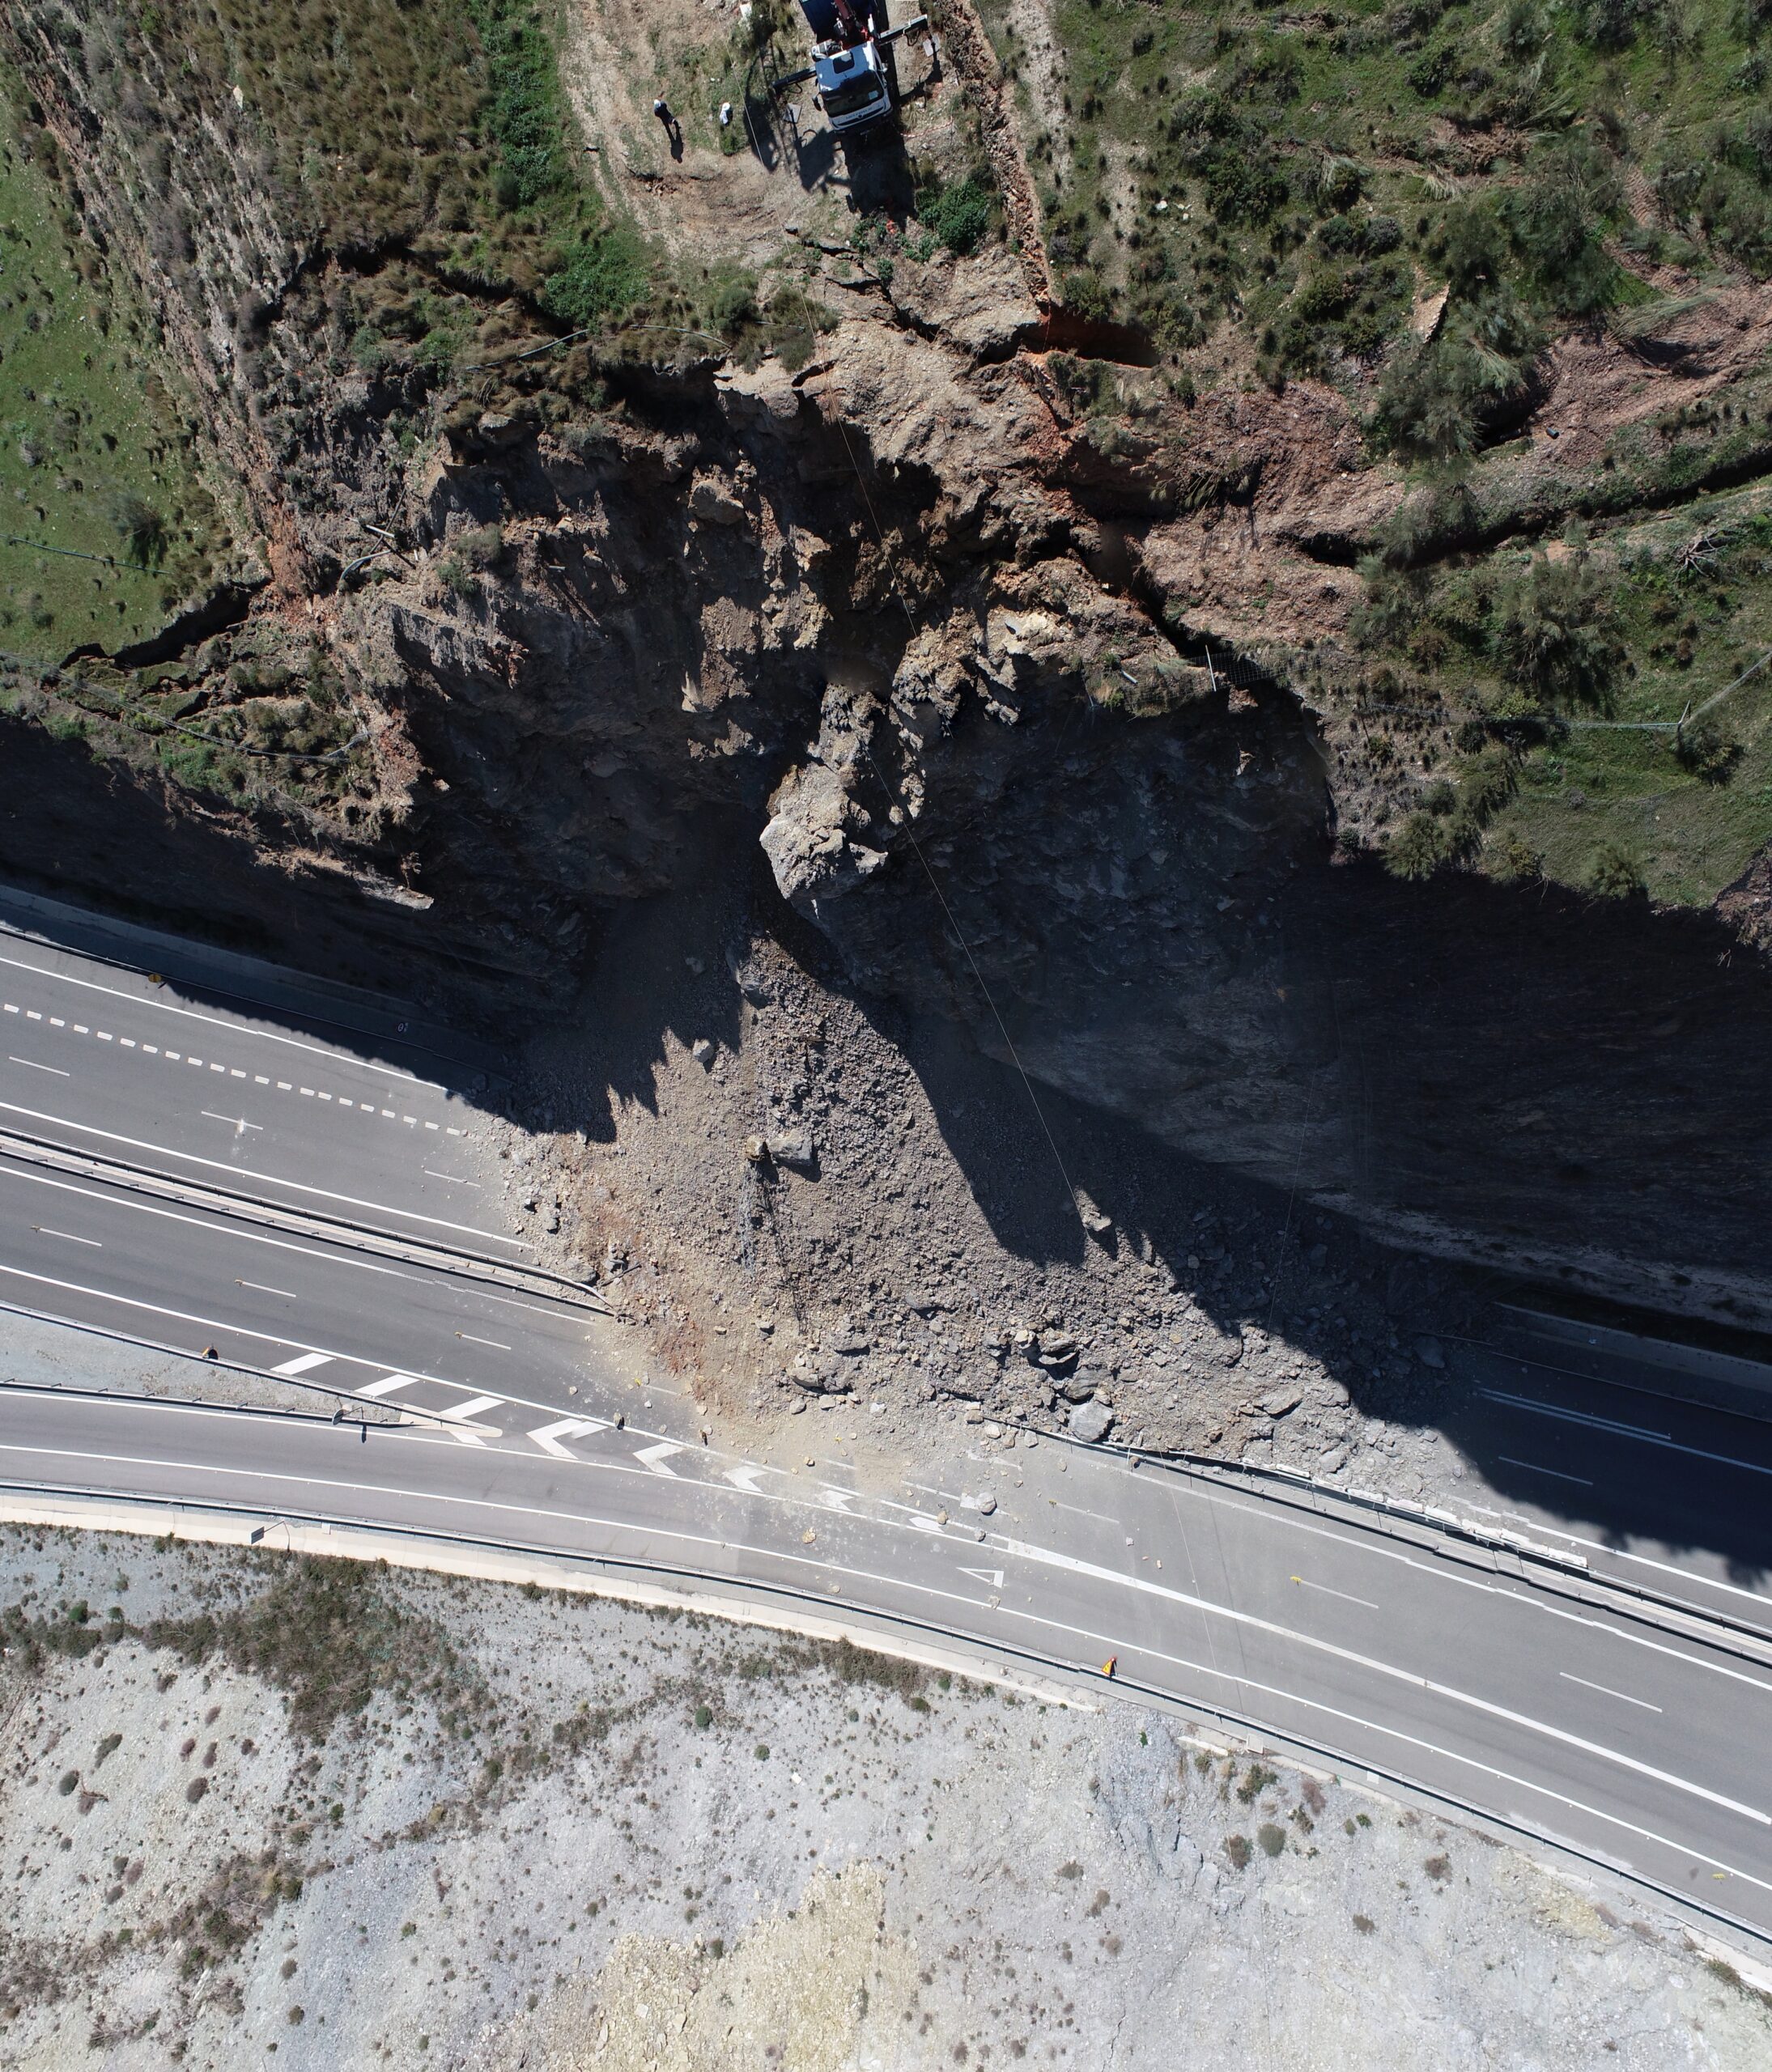 Imágenes del derrumbe del talud de tierra en la autovía A7 en Castell de Ferro (Granada) tomadas por los investigadores de la UGR.